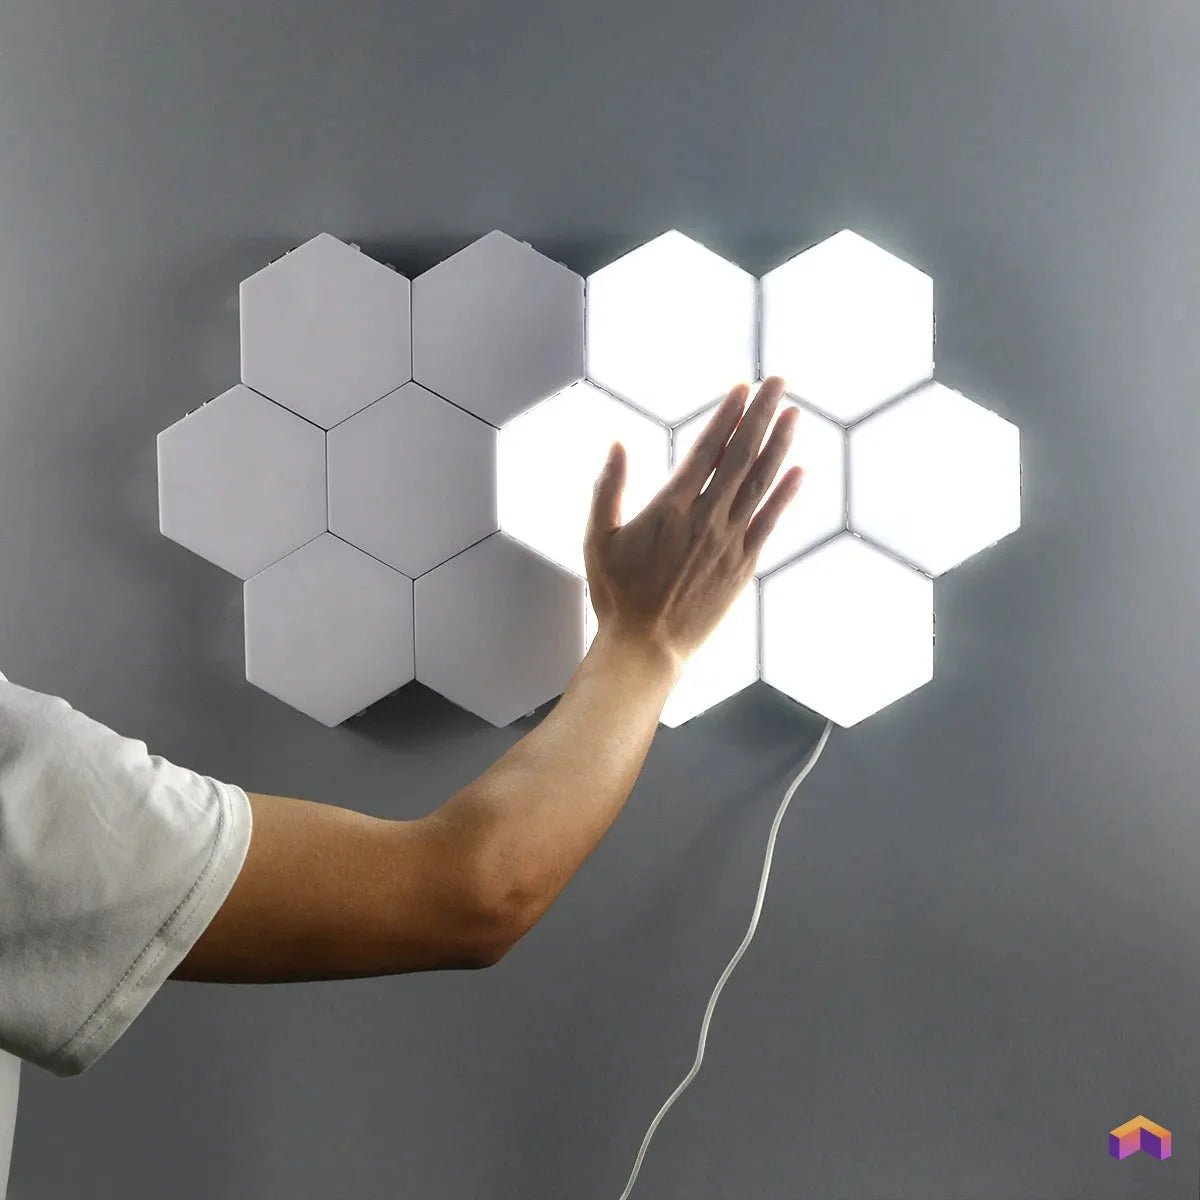 Panneaux LED Hexagonal - Déco Gaming